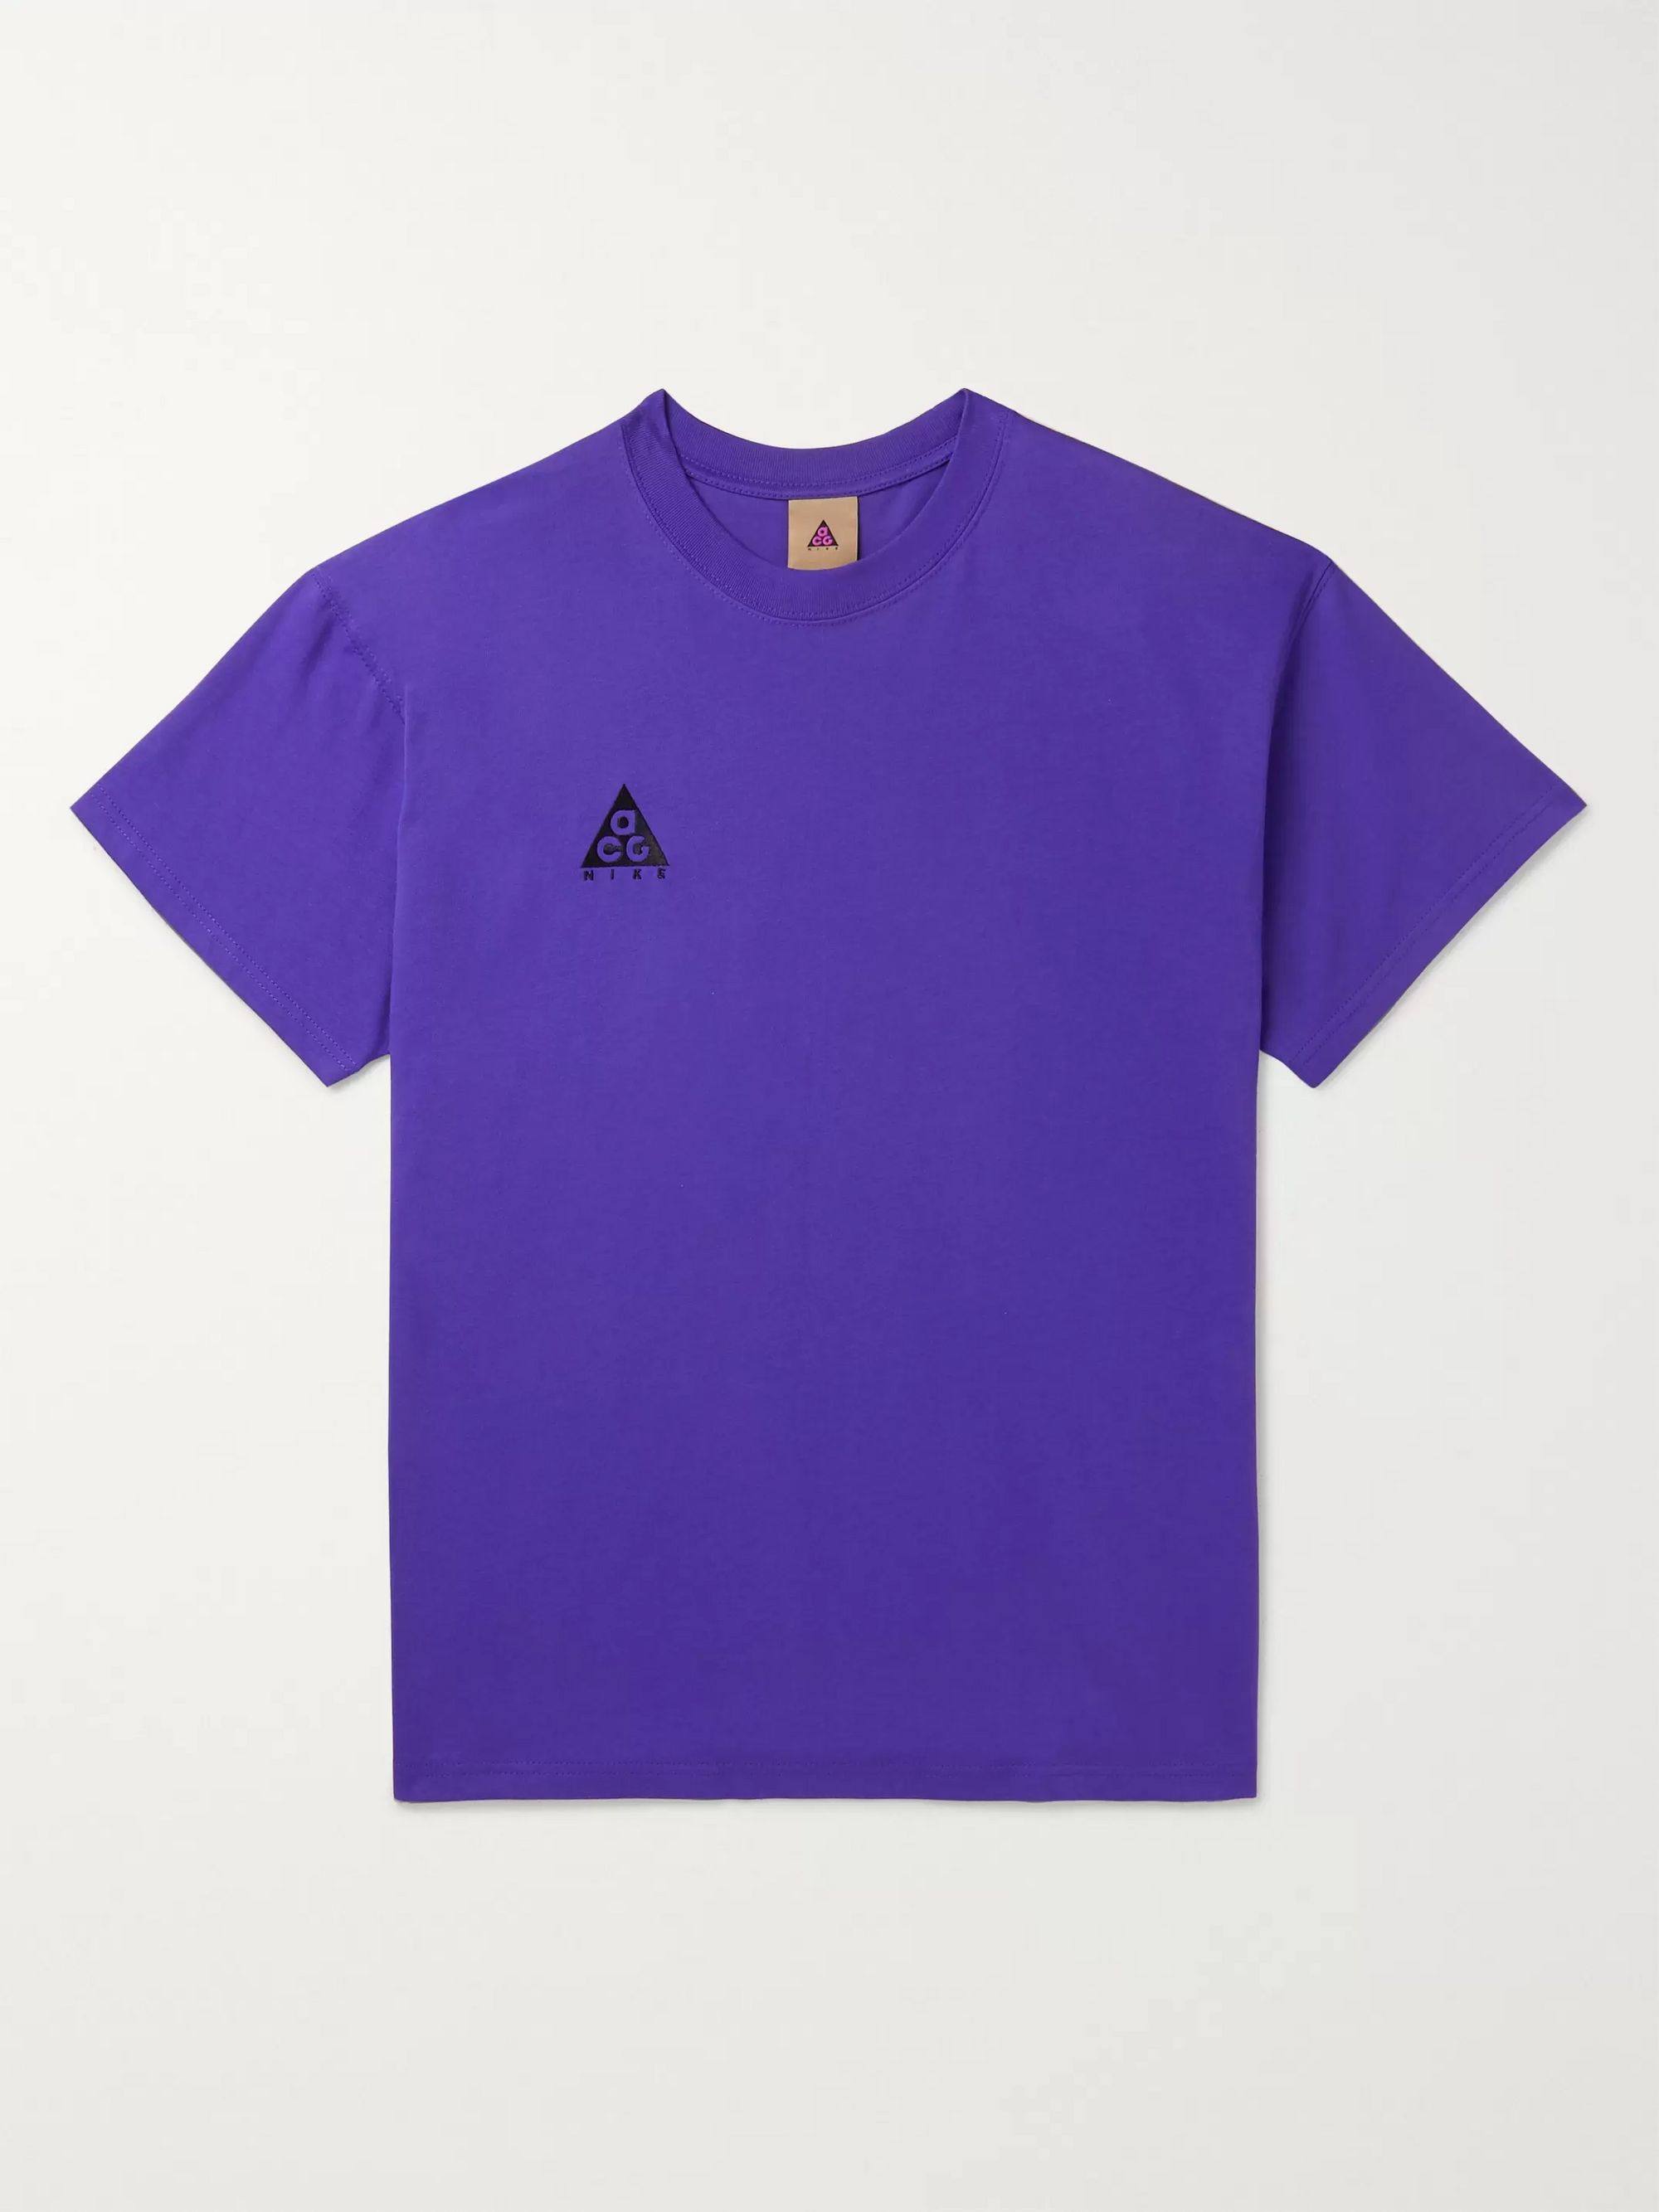 purple nike jersey